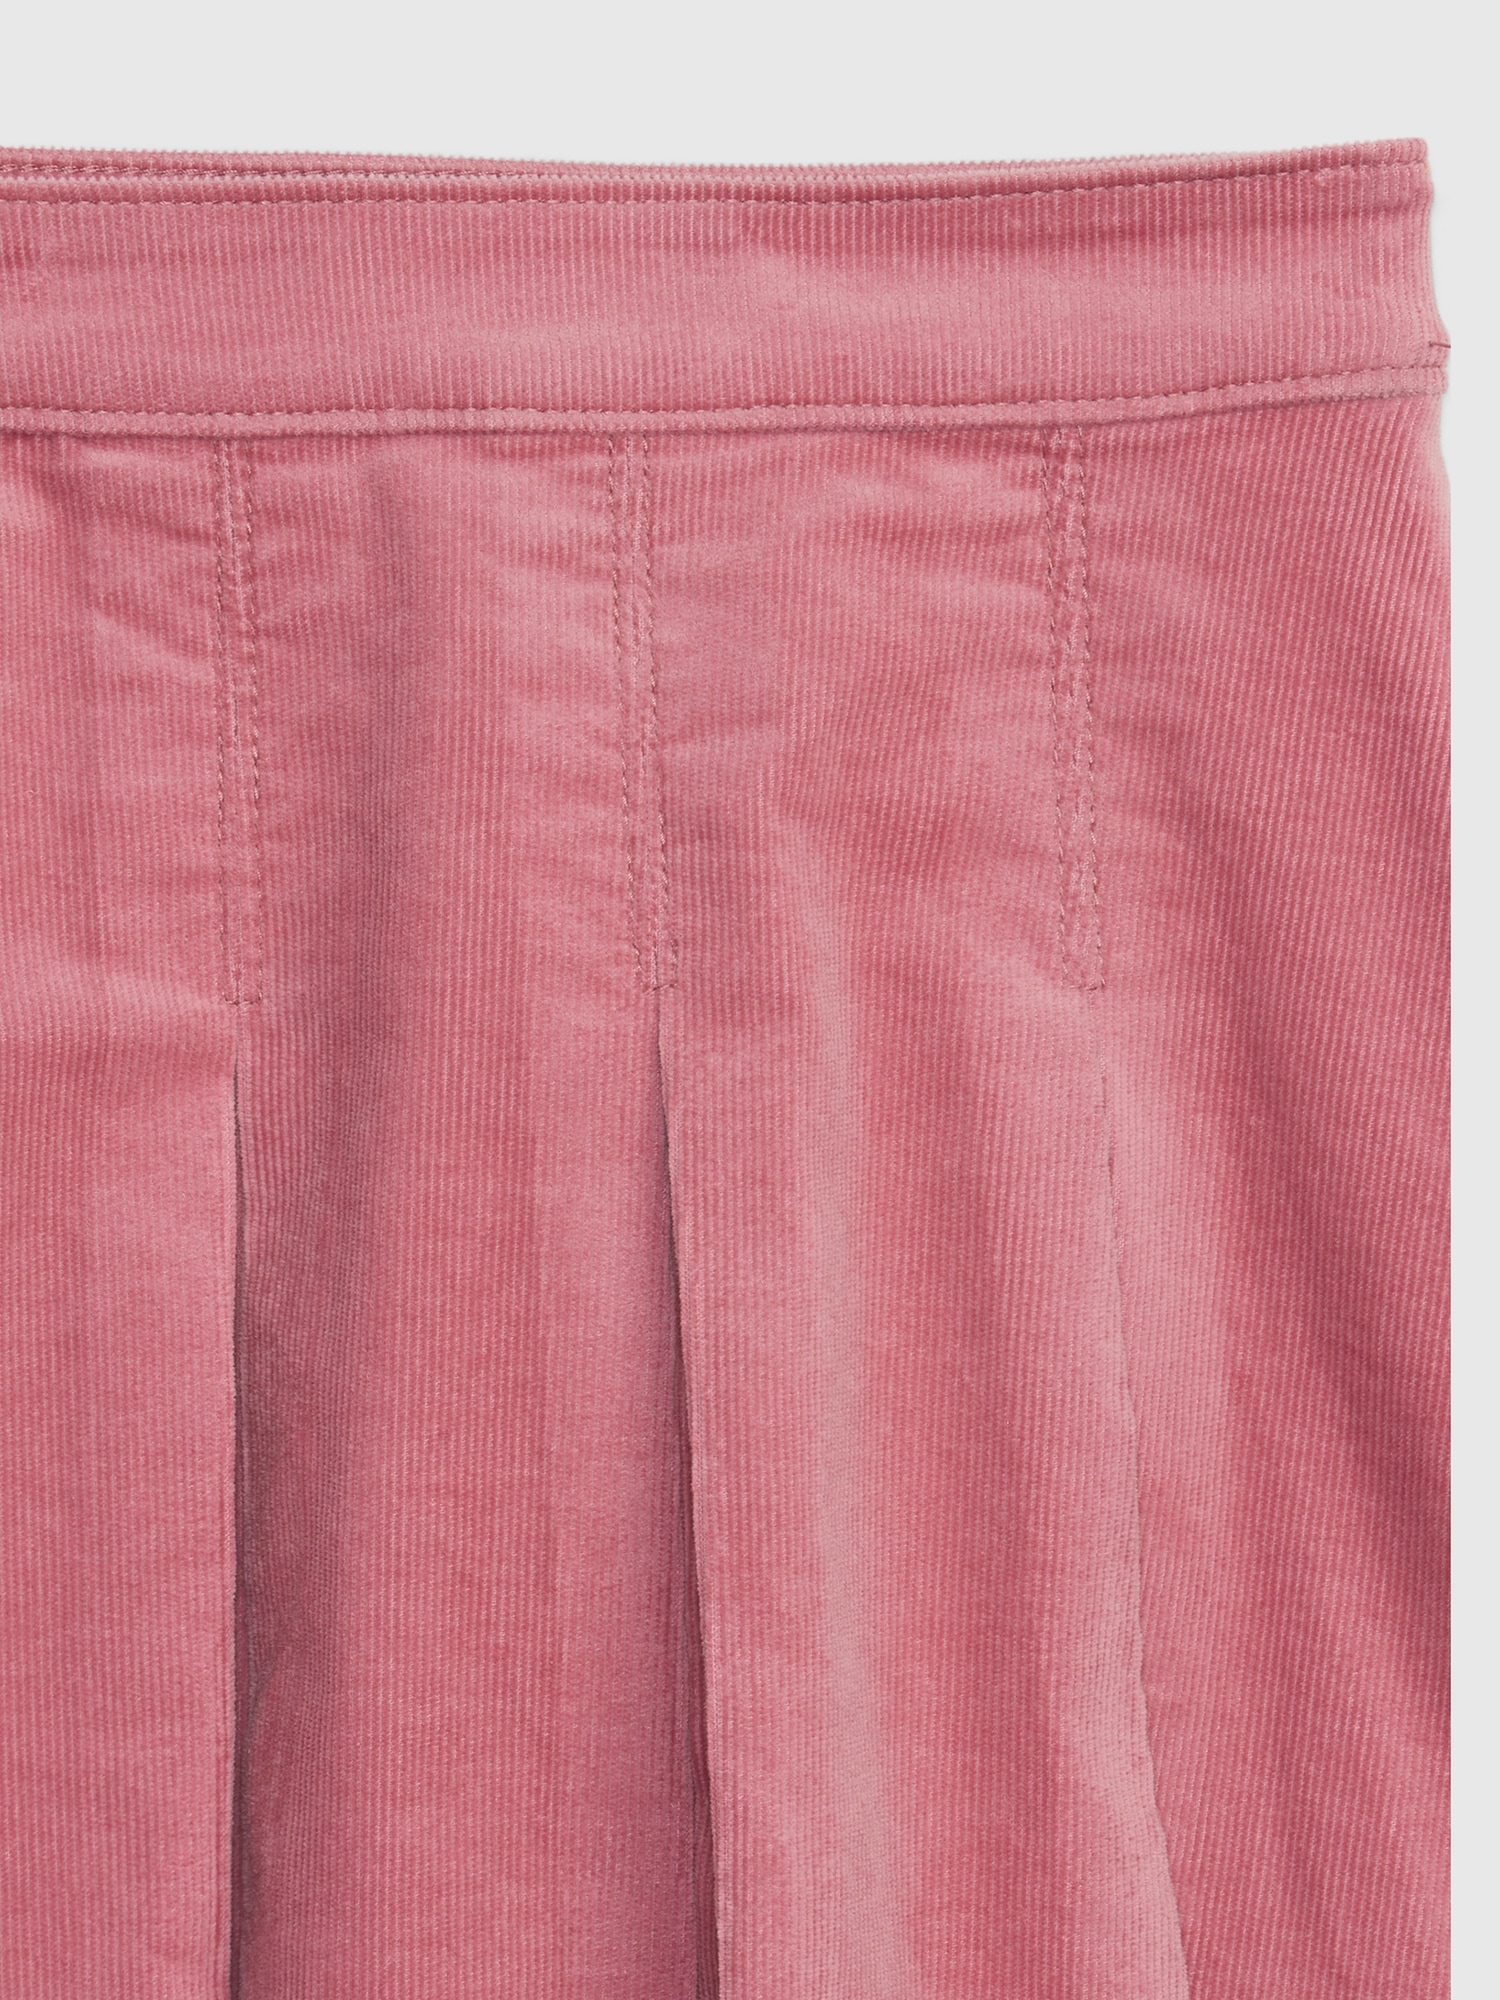 Kids Corduroy Pleated Mini Skirt | Gap